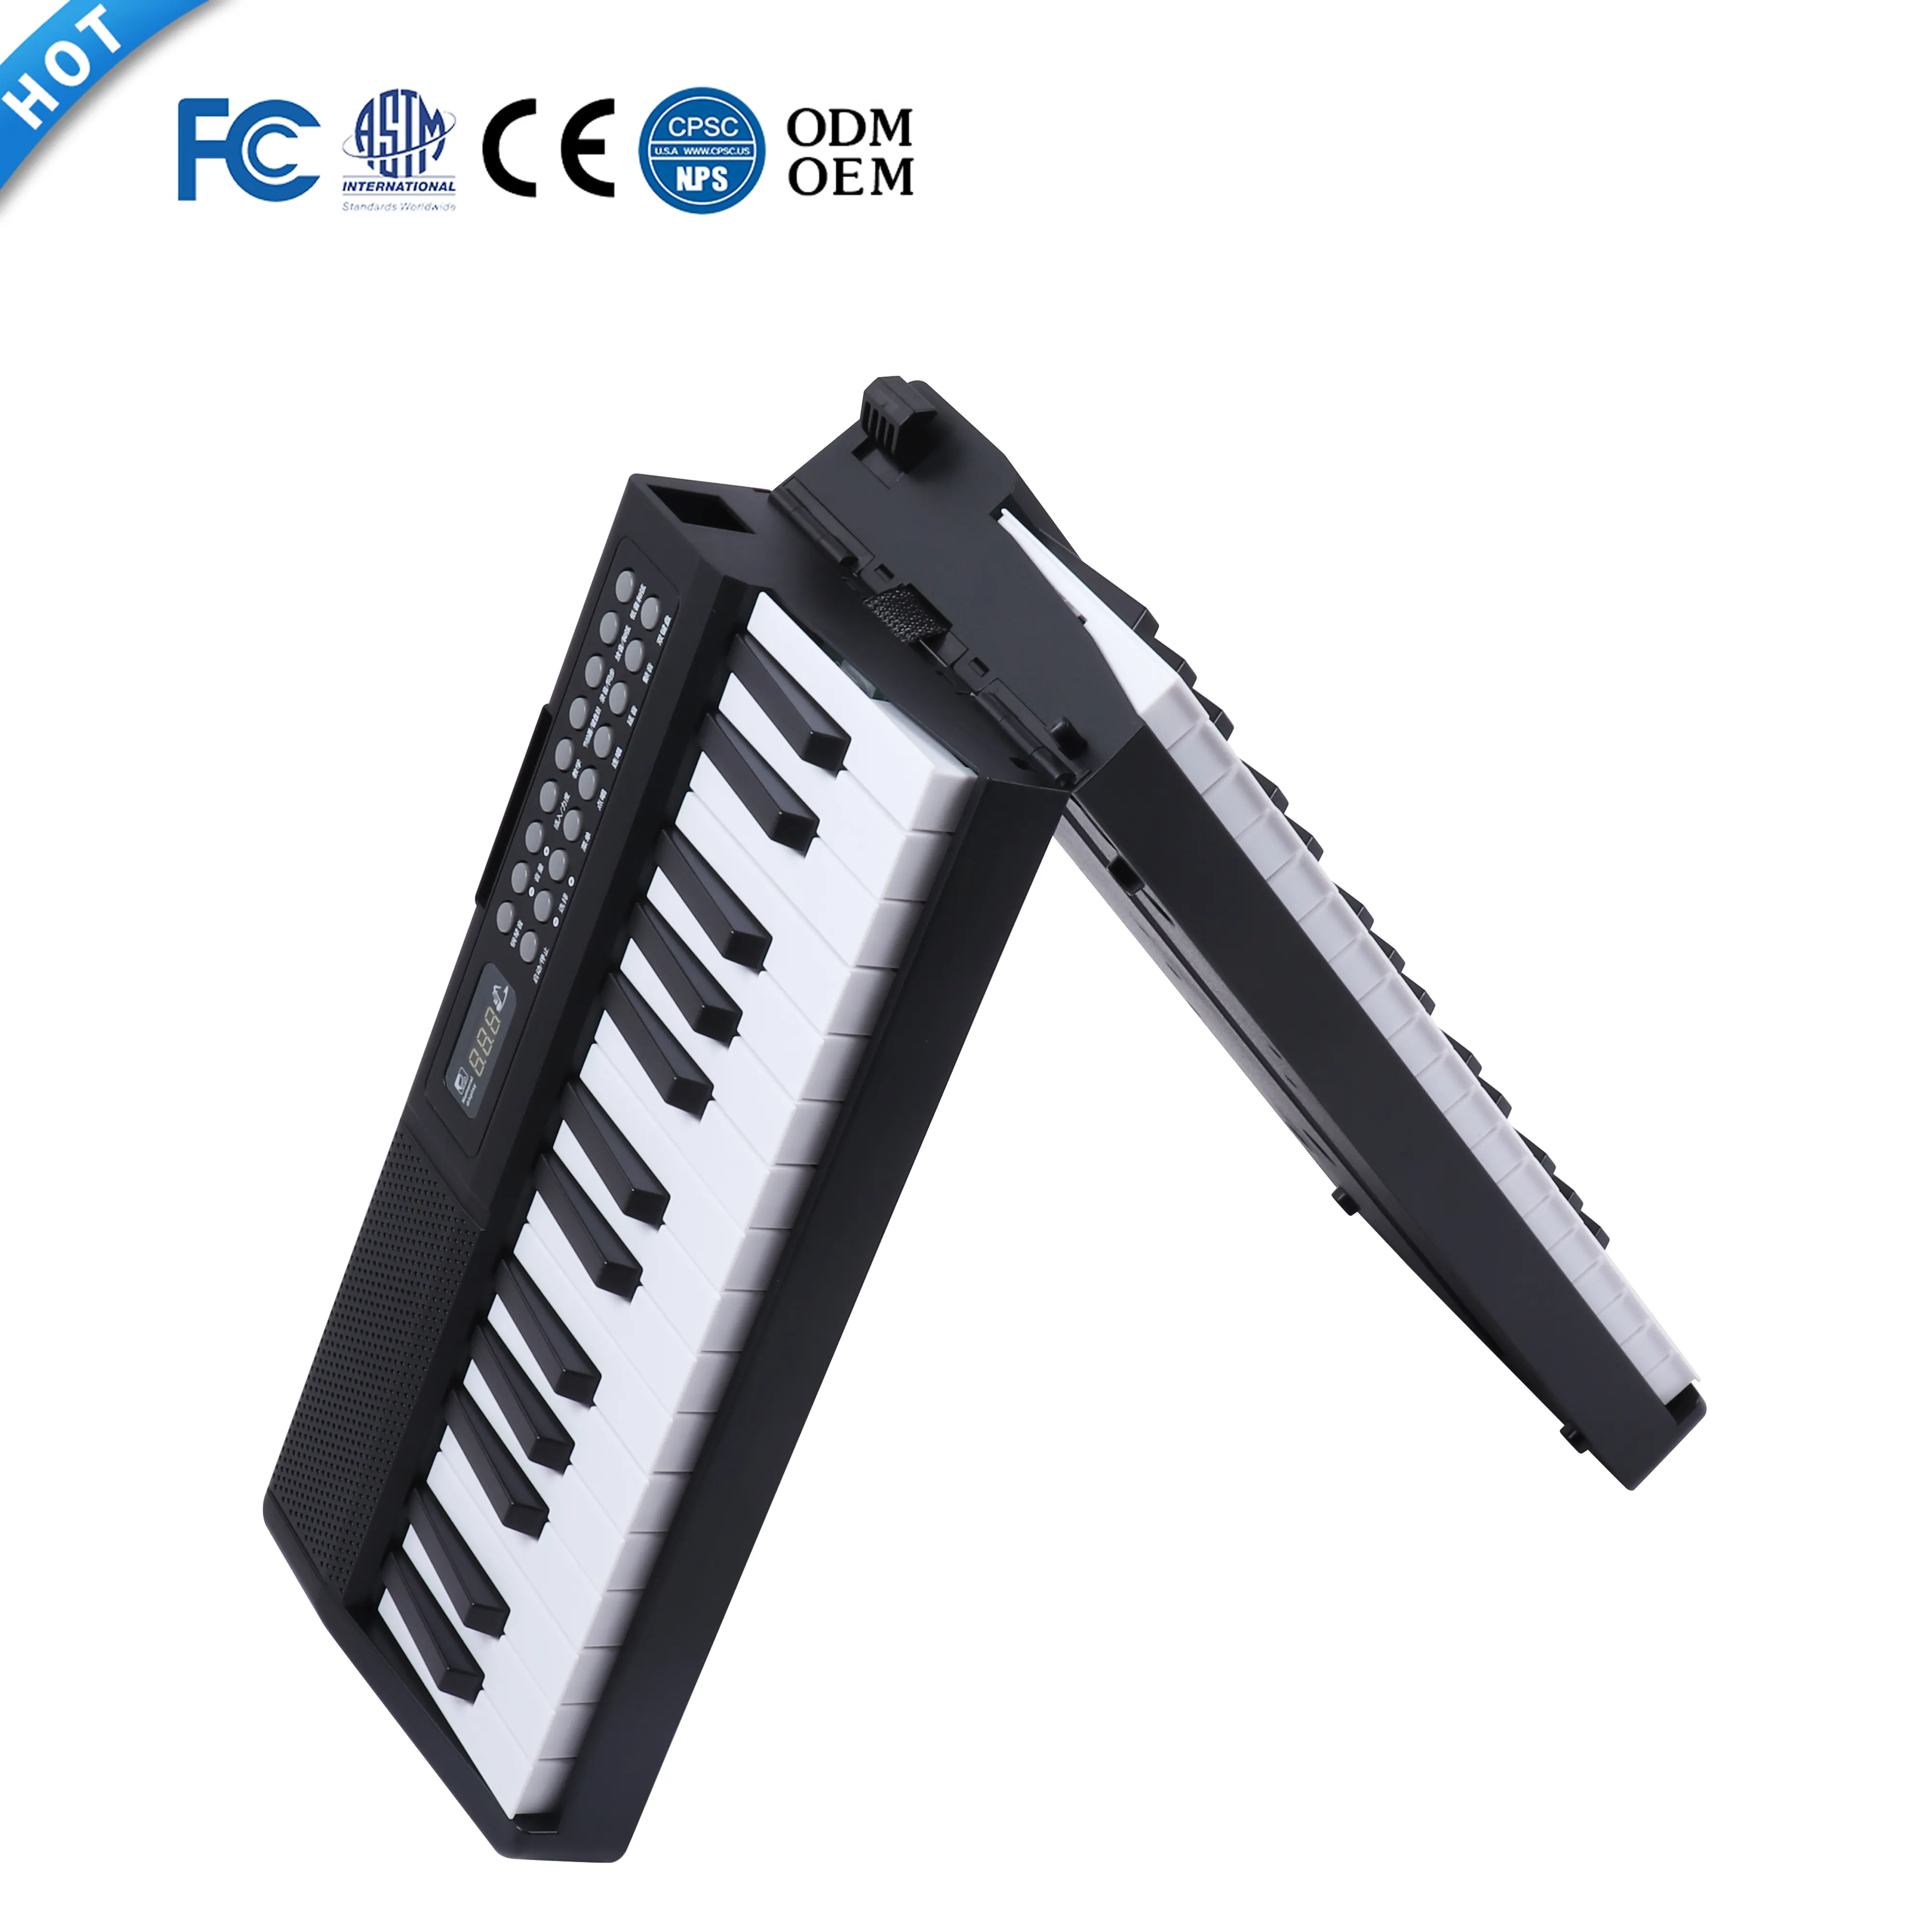 61 Berührungs empfindliche Tasten Klavier Faltbares Digital piano Tragbare Musik tastatur instrumente Faltbare elektronische Tastatur orgel